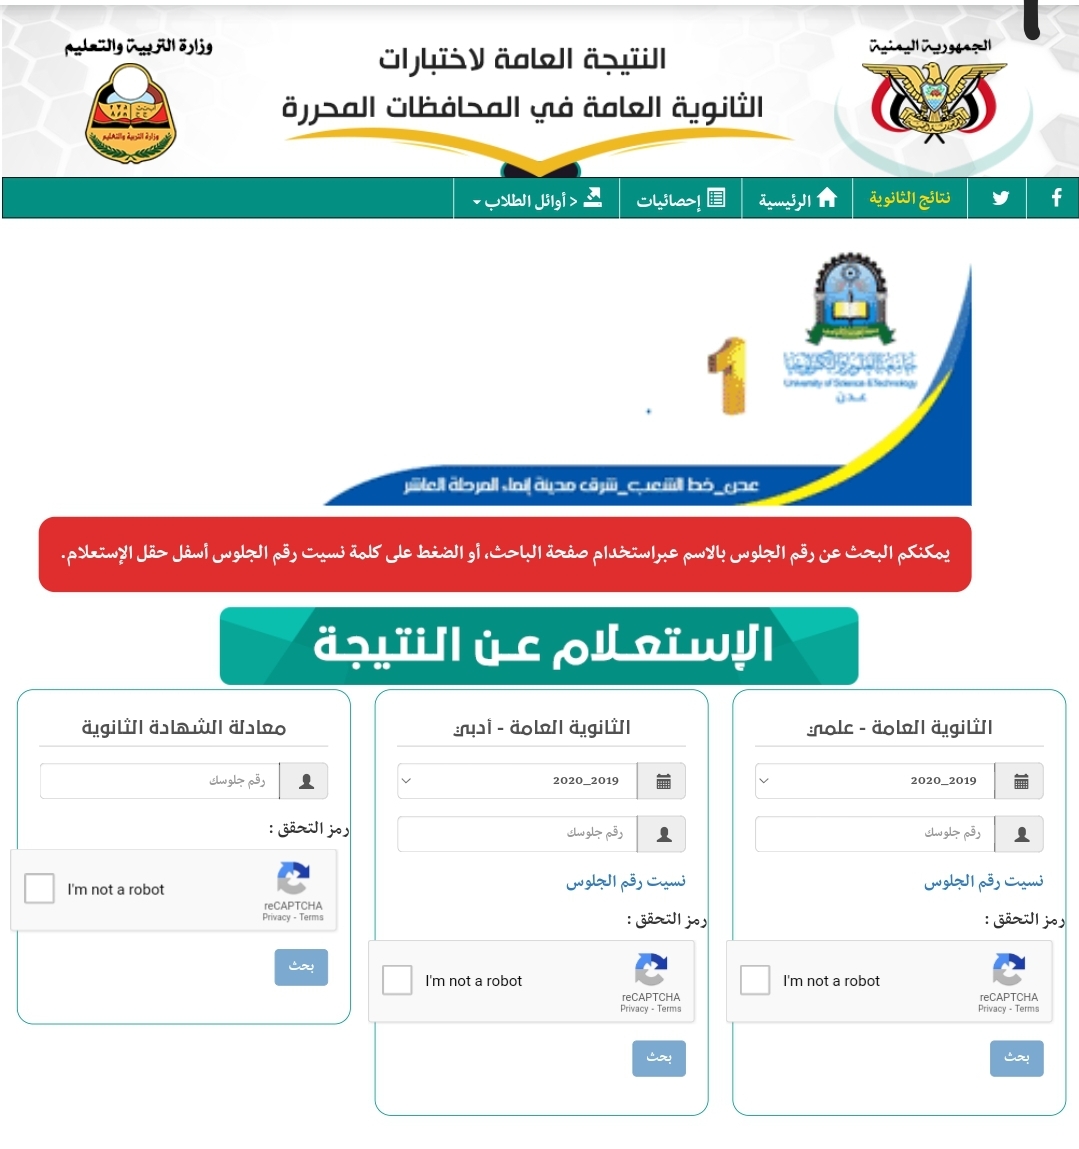 رابط سريع لمعرفة نتائج الصف التاسع اليمن 2022 صنعاء بحسب الاسم ورقم الجلوس للثانوية العامة اليمنية results link - ثقفني